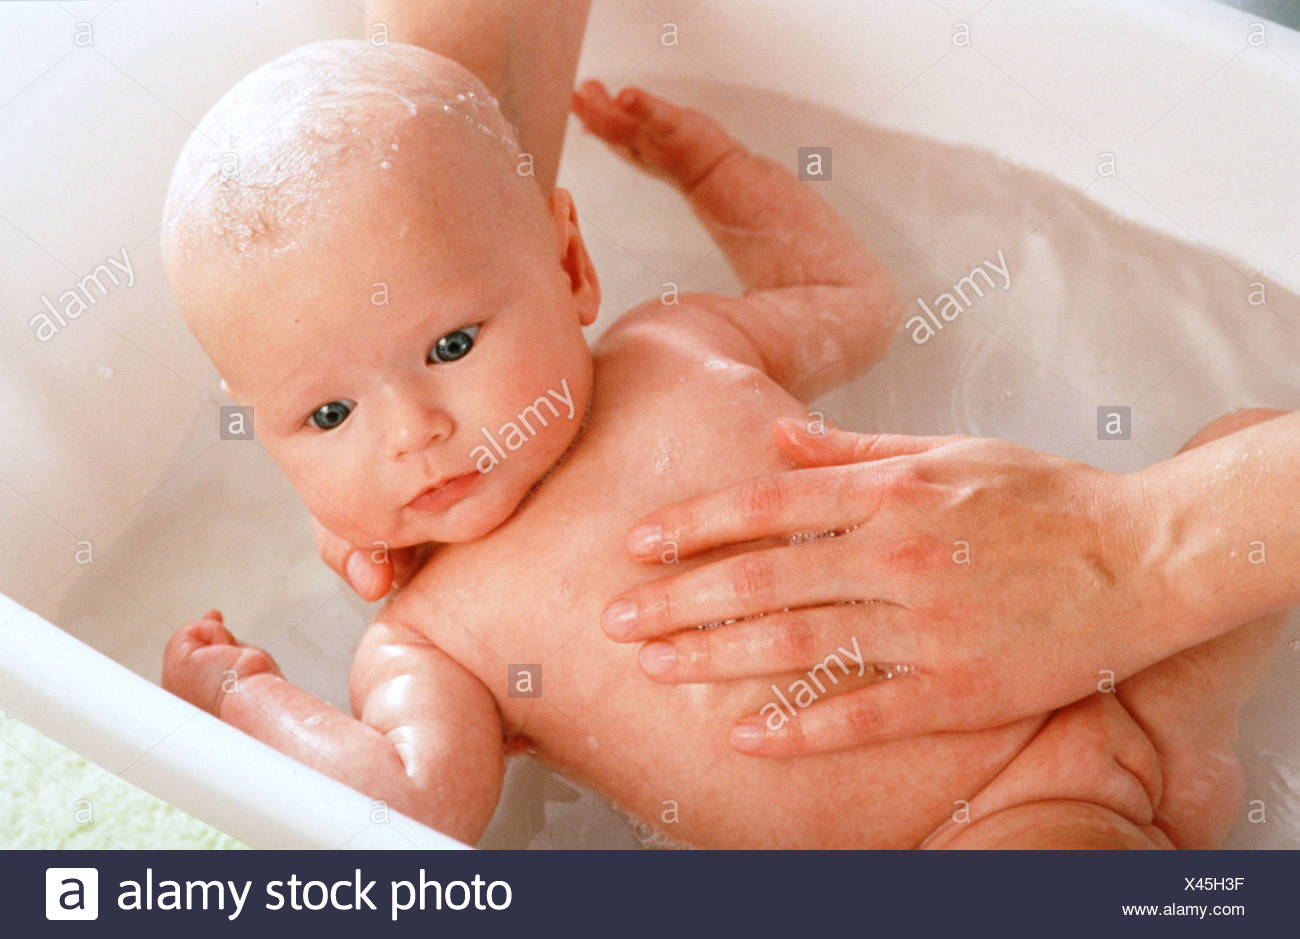 bathing baby girl